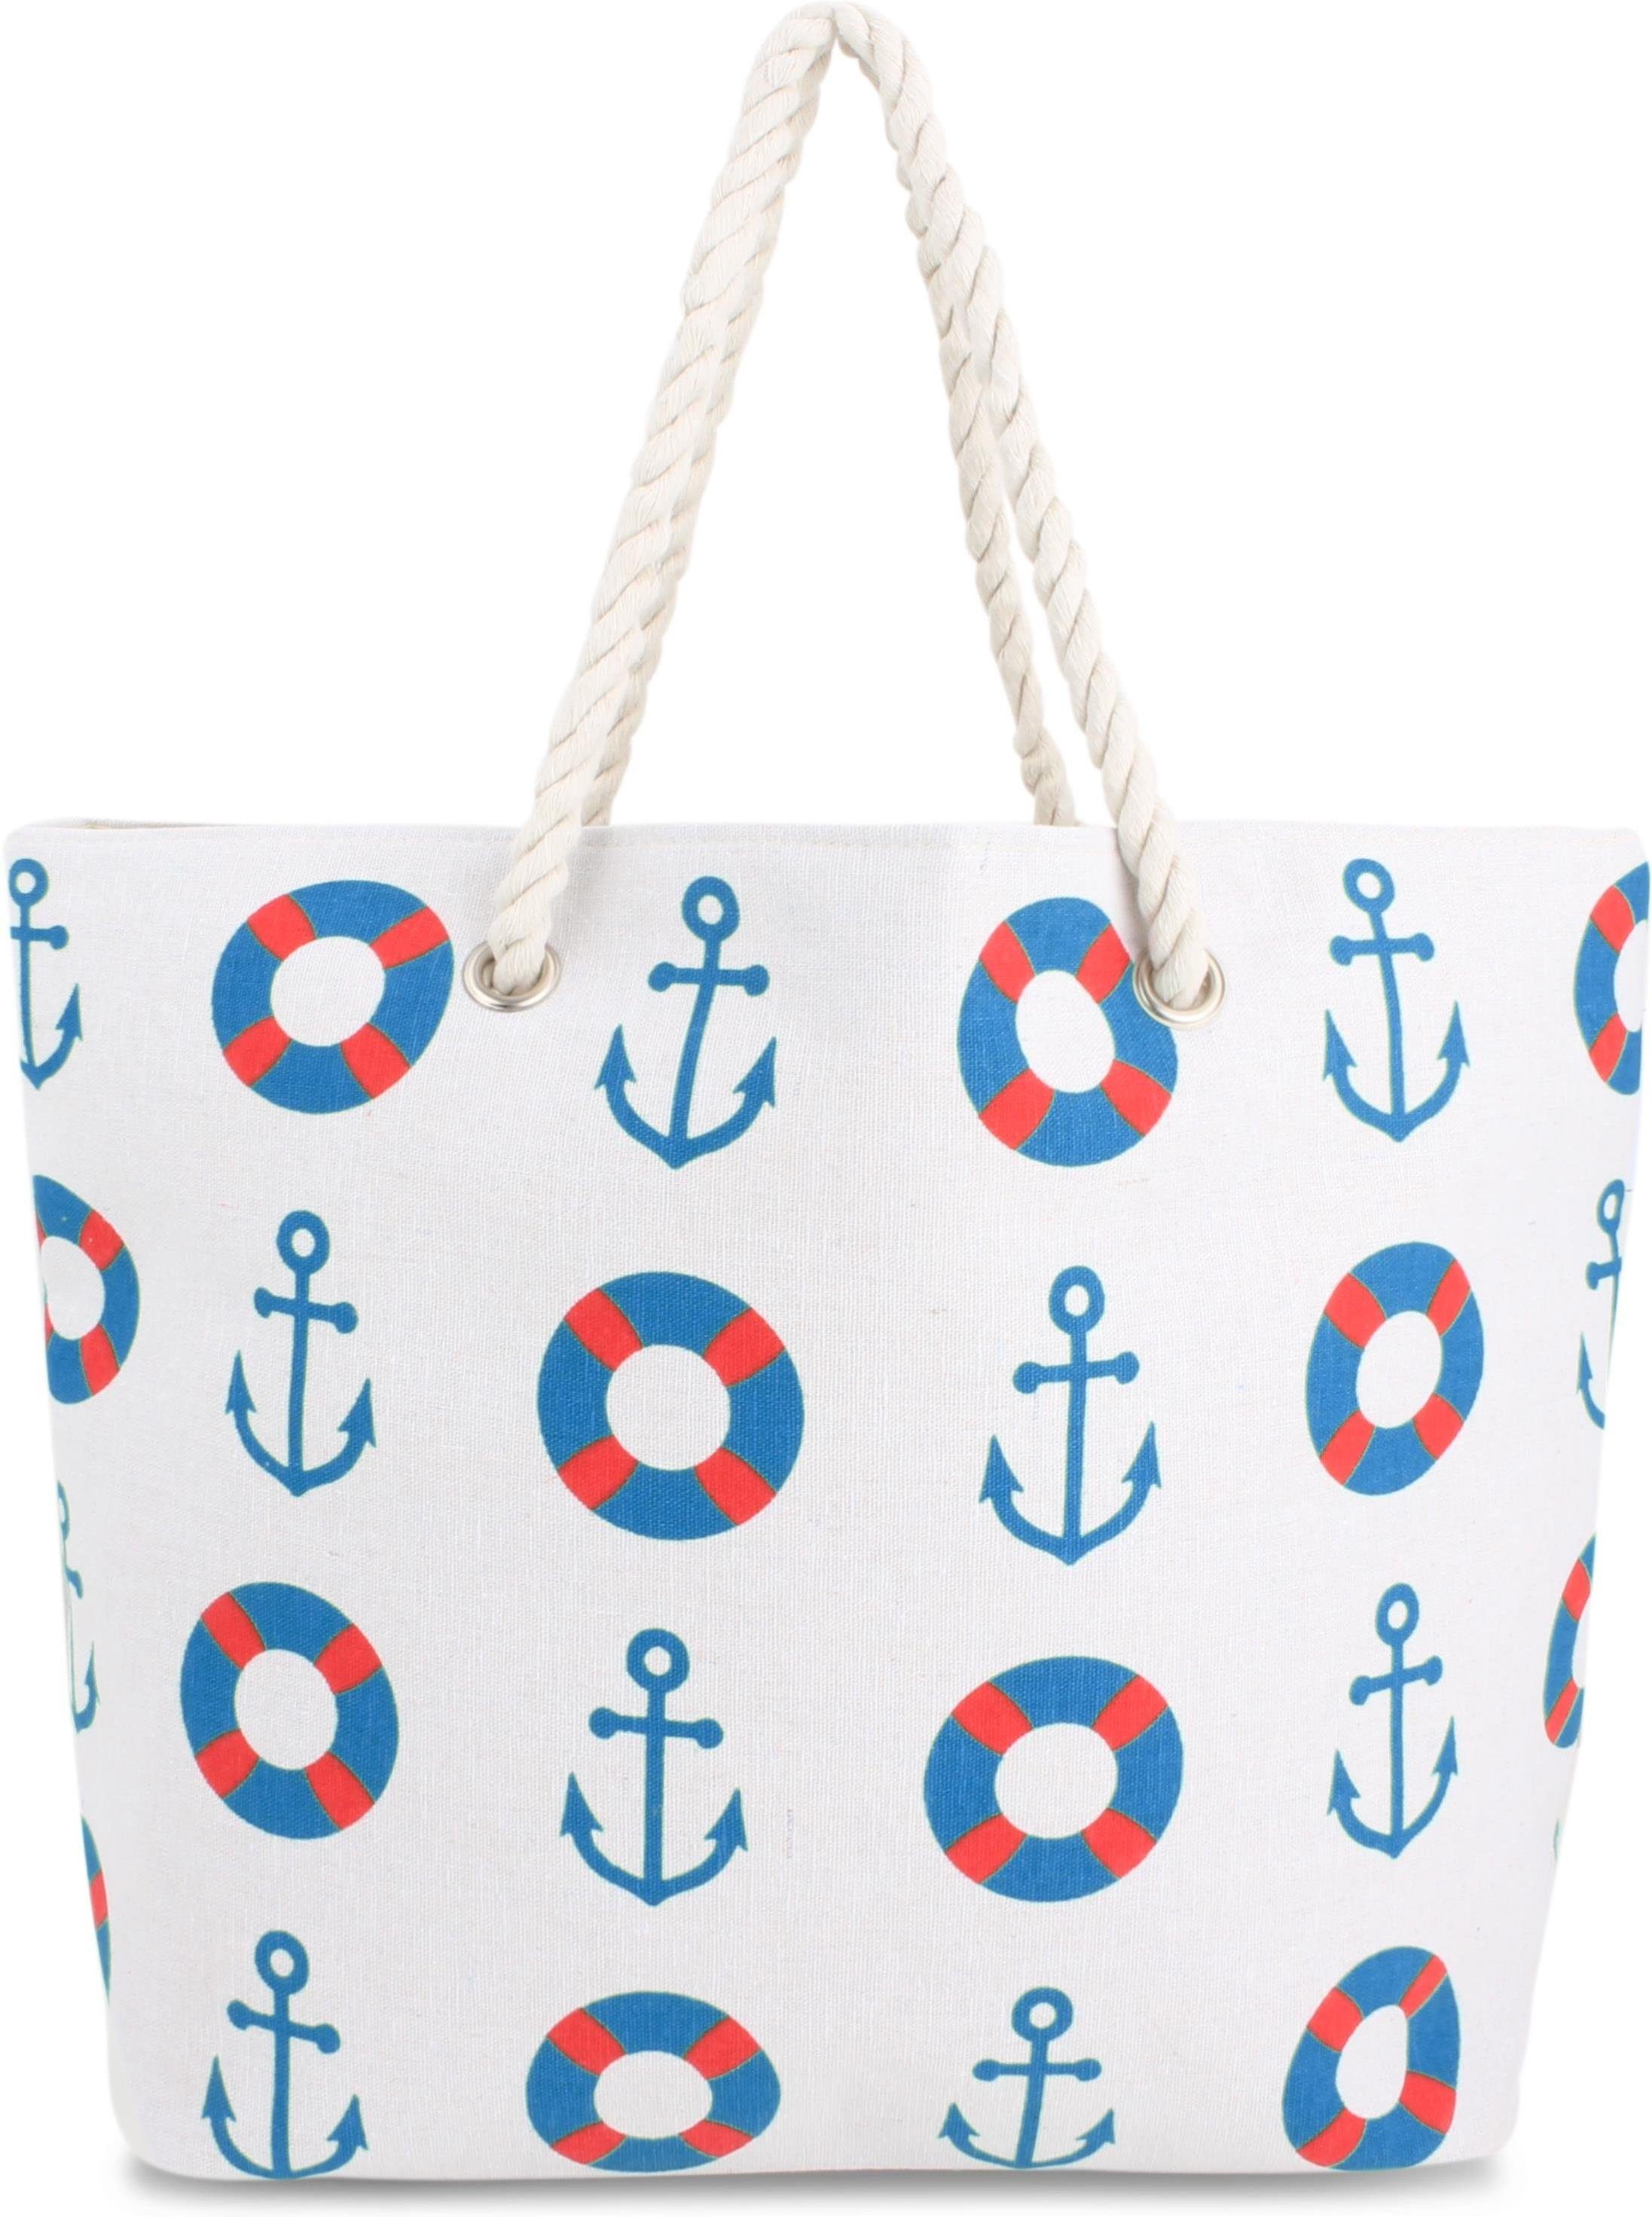 Strandtasche tragbar Bequeme Sommer-Umhängetasche, Blue Schultertasche als Strandtasche, normani Seaside Henkeltasche